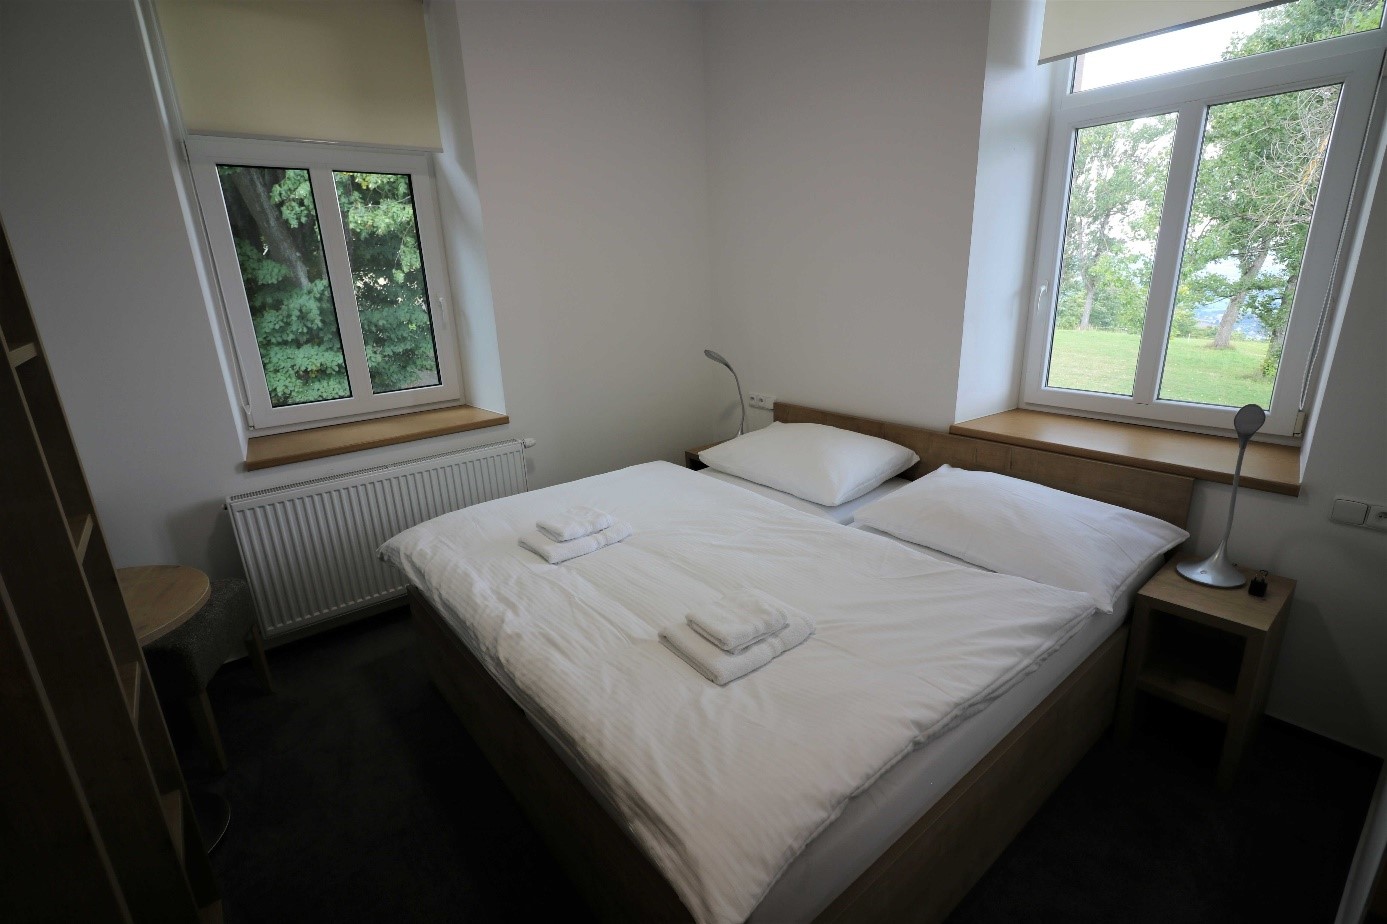 Králíky-Dolní Hedeč, Hotel Pilgrimage House - Pokoj s manželskou postelí